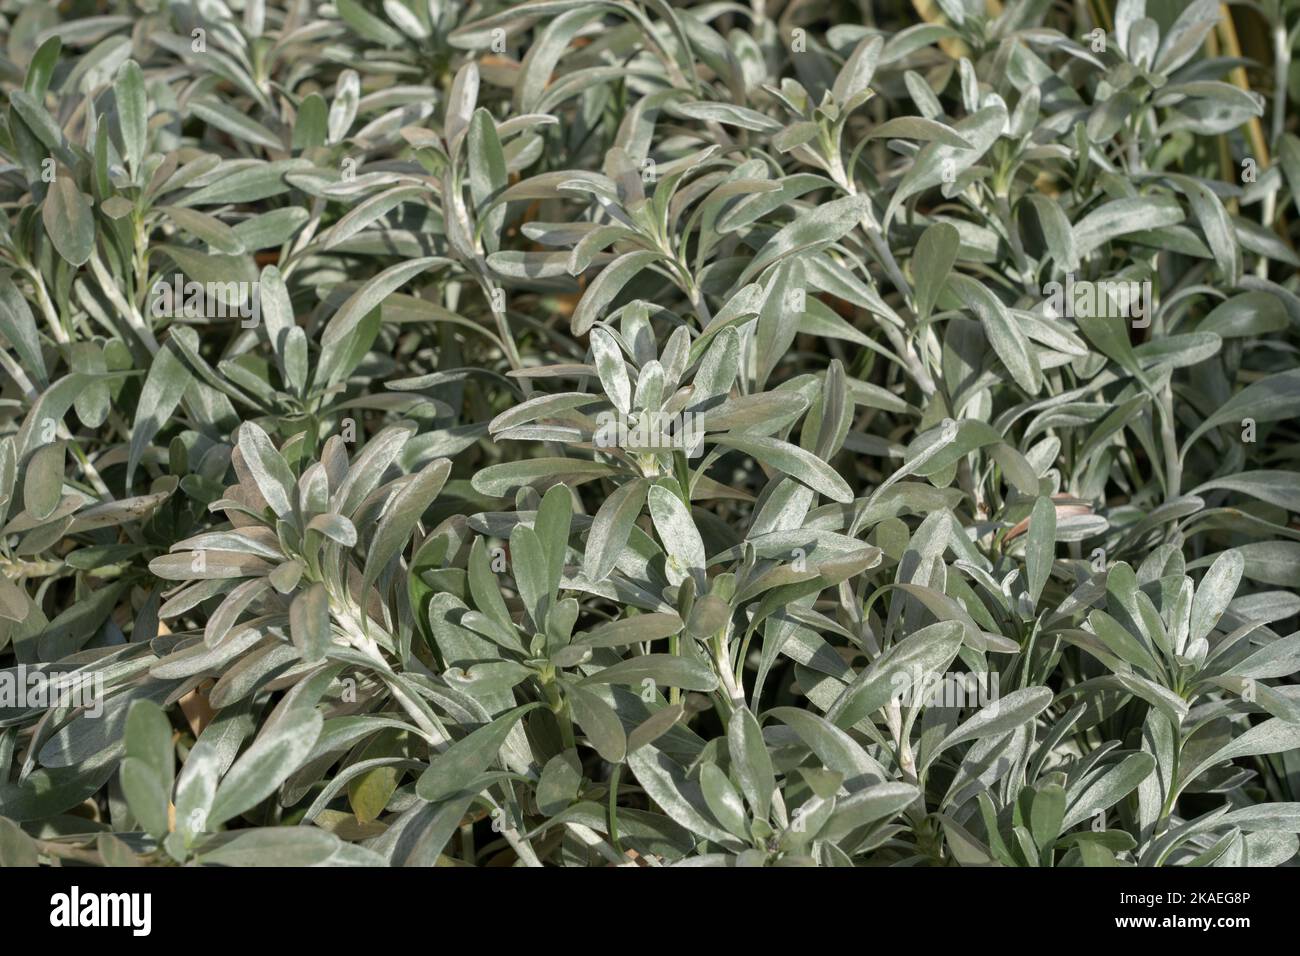 Vista in primo piano del fogliame verde argento di convolvulus cneorum aka silverbush o arbusto bindweed all'aperto alla luce del sole Foto Stock